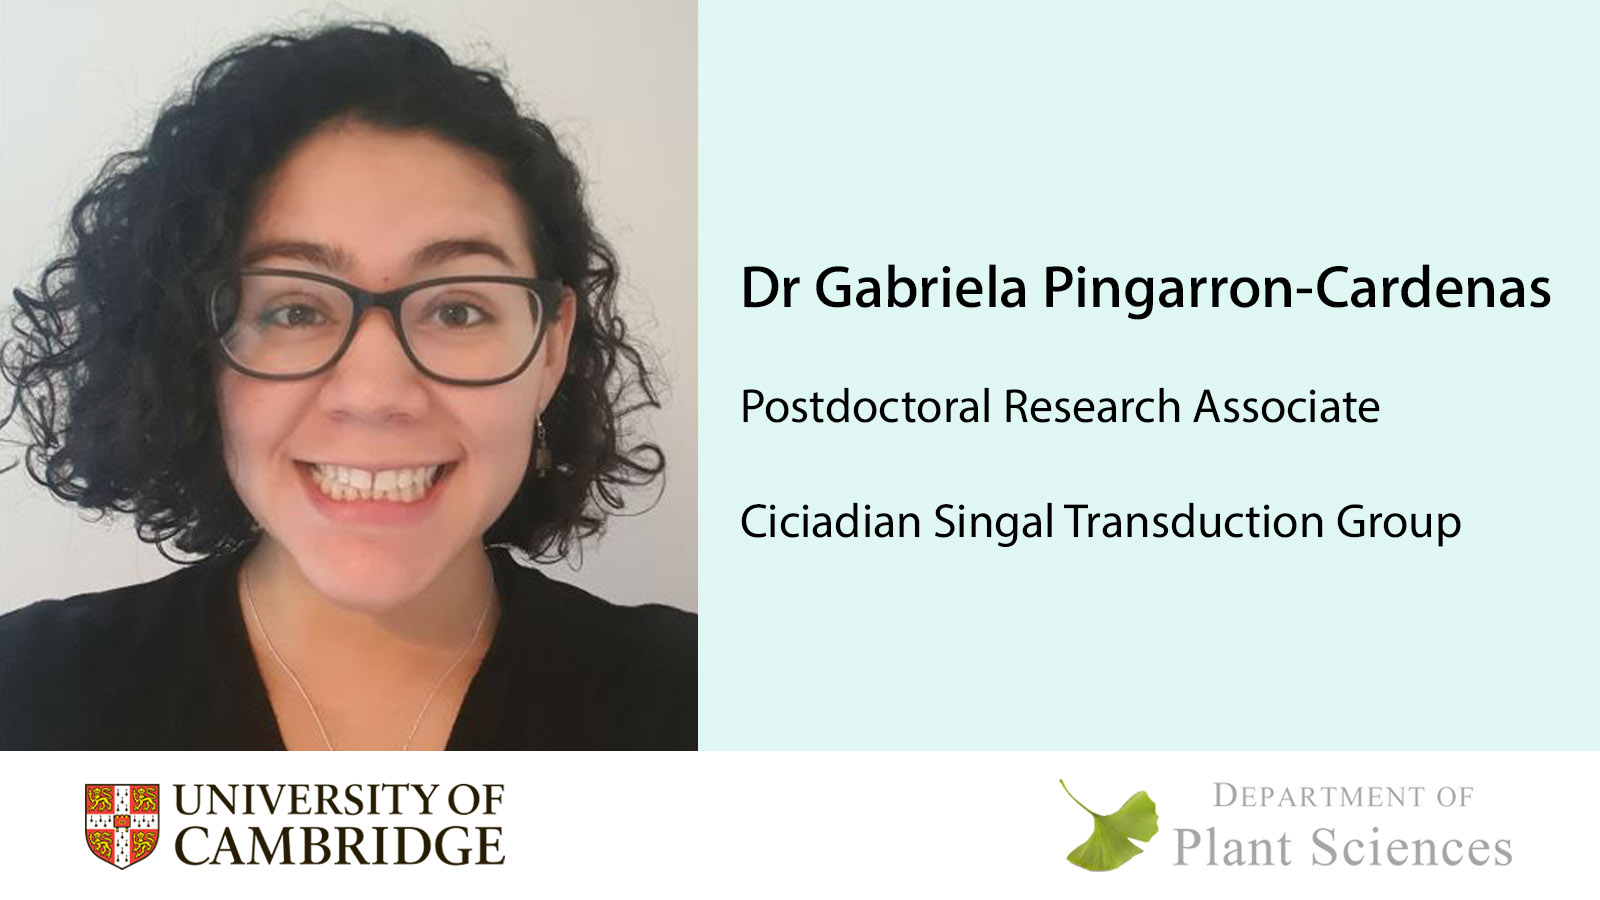 Dr Gabriela Pingarron-Cardenas